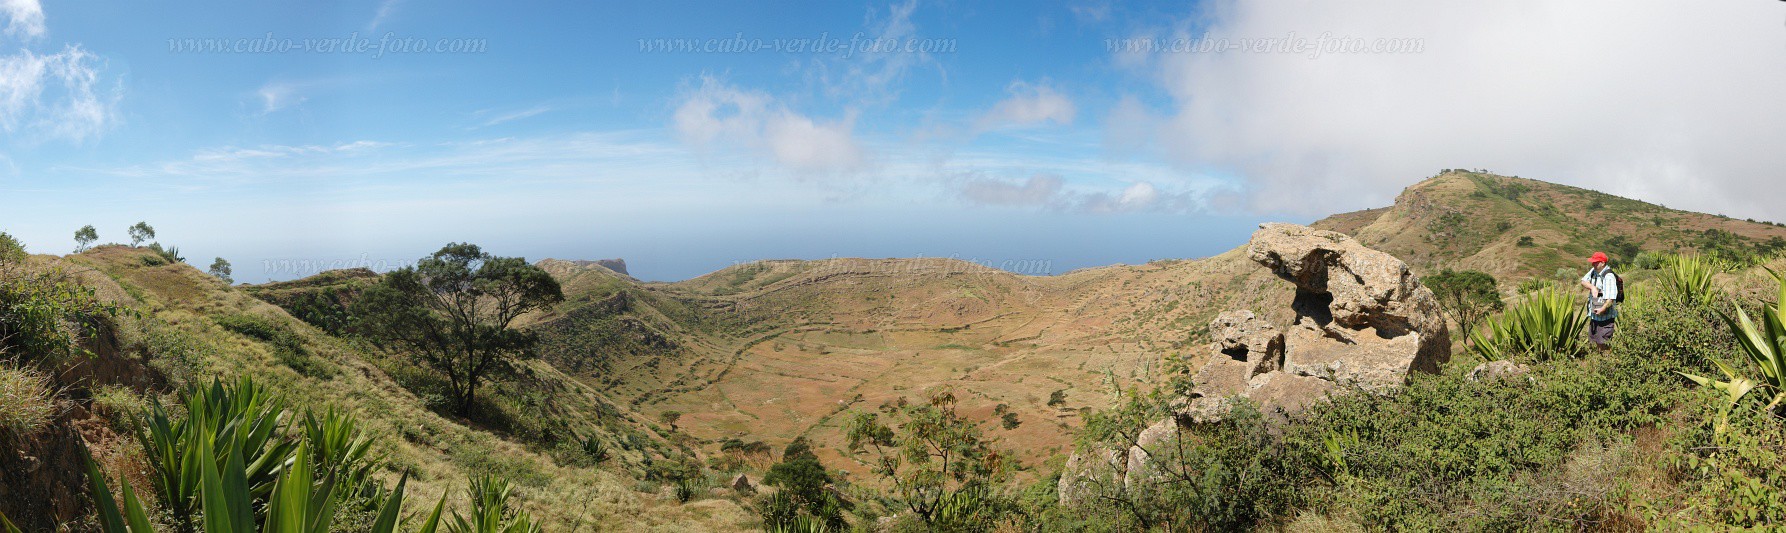 Brava : Fundo Grande : vulco : LandscapeCabo Verde Foto Gallery